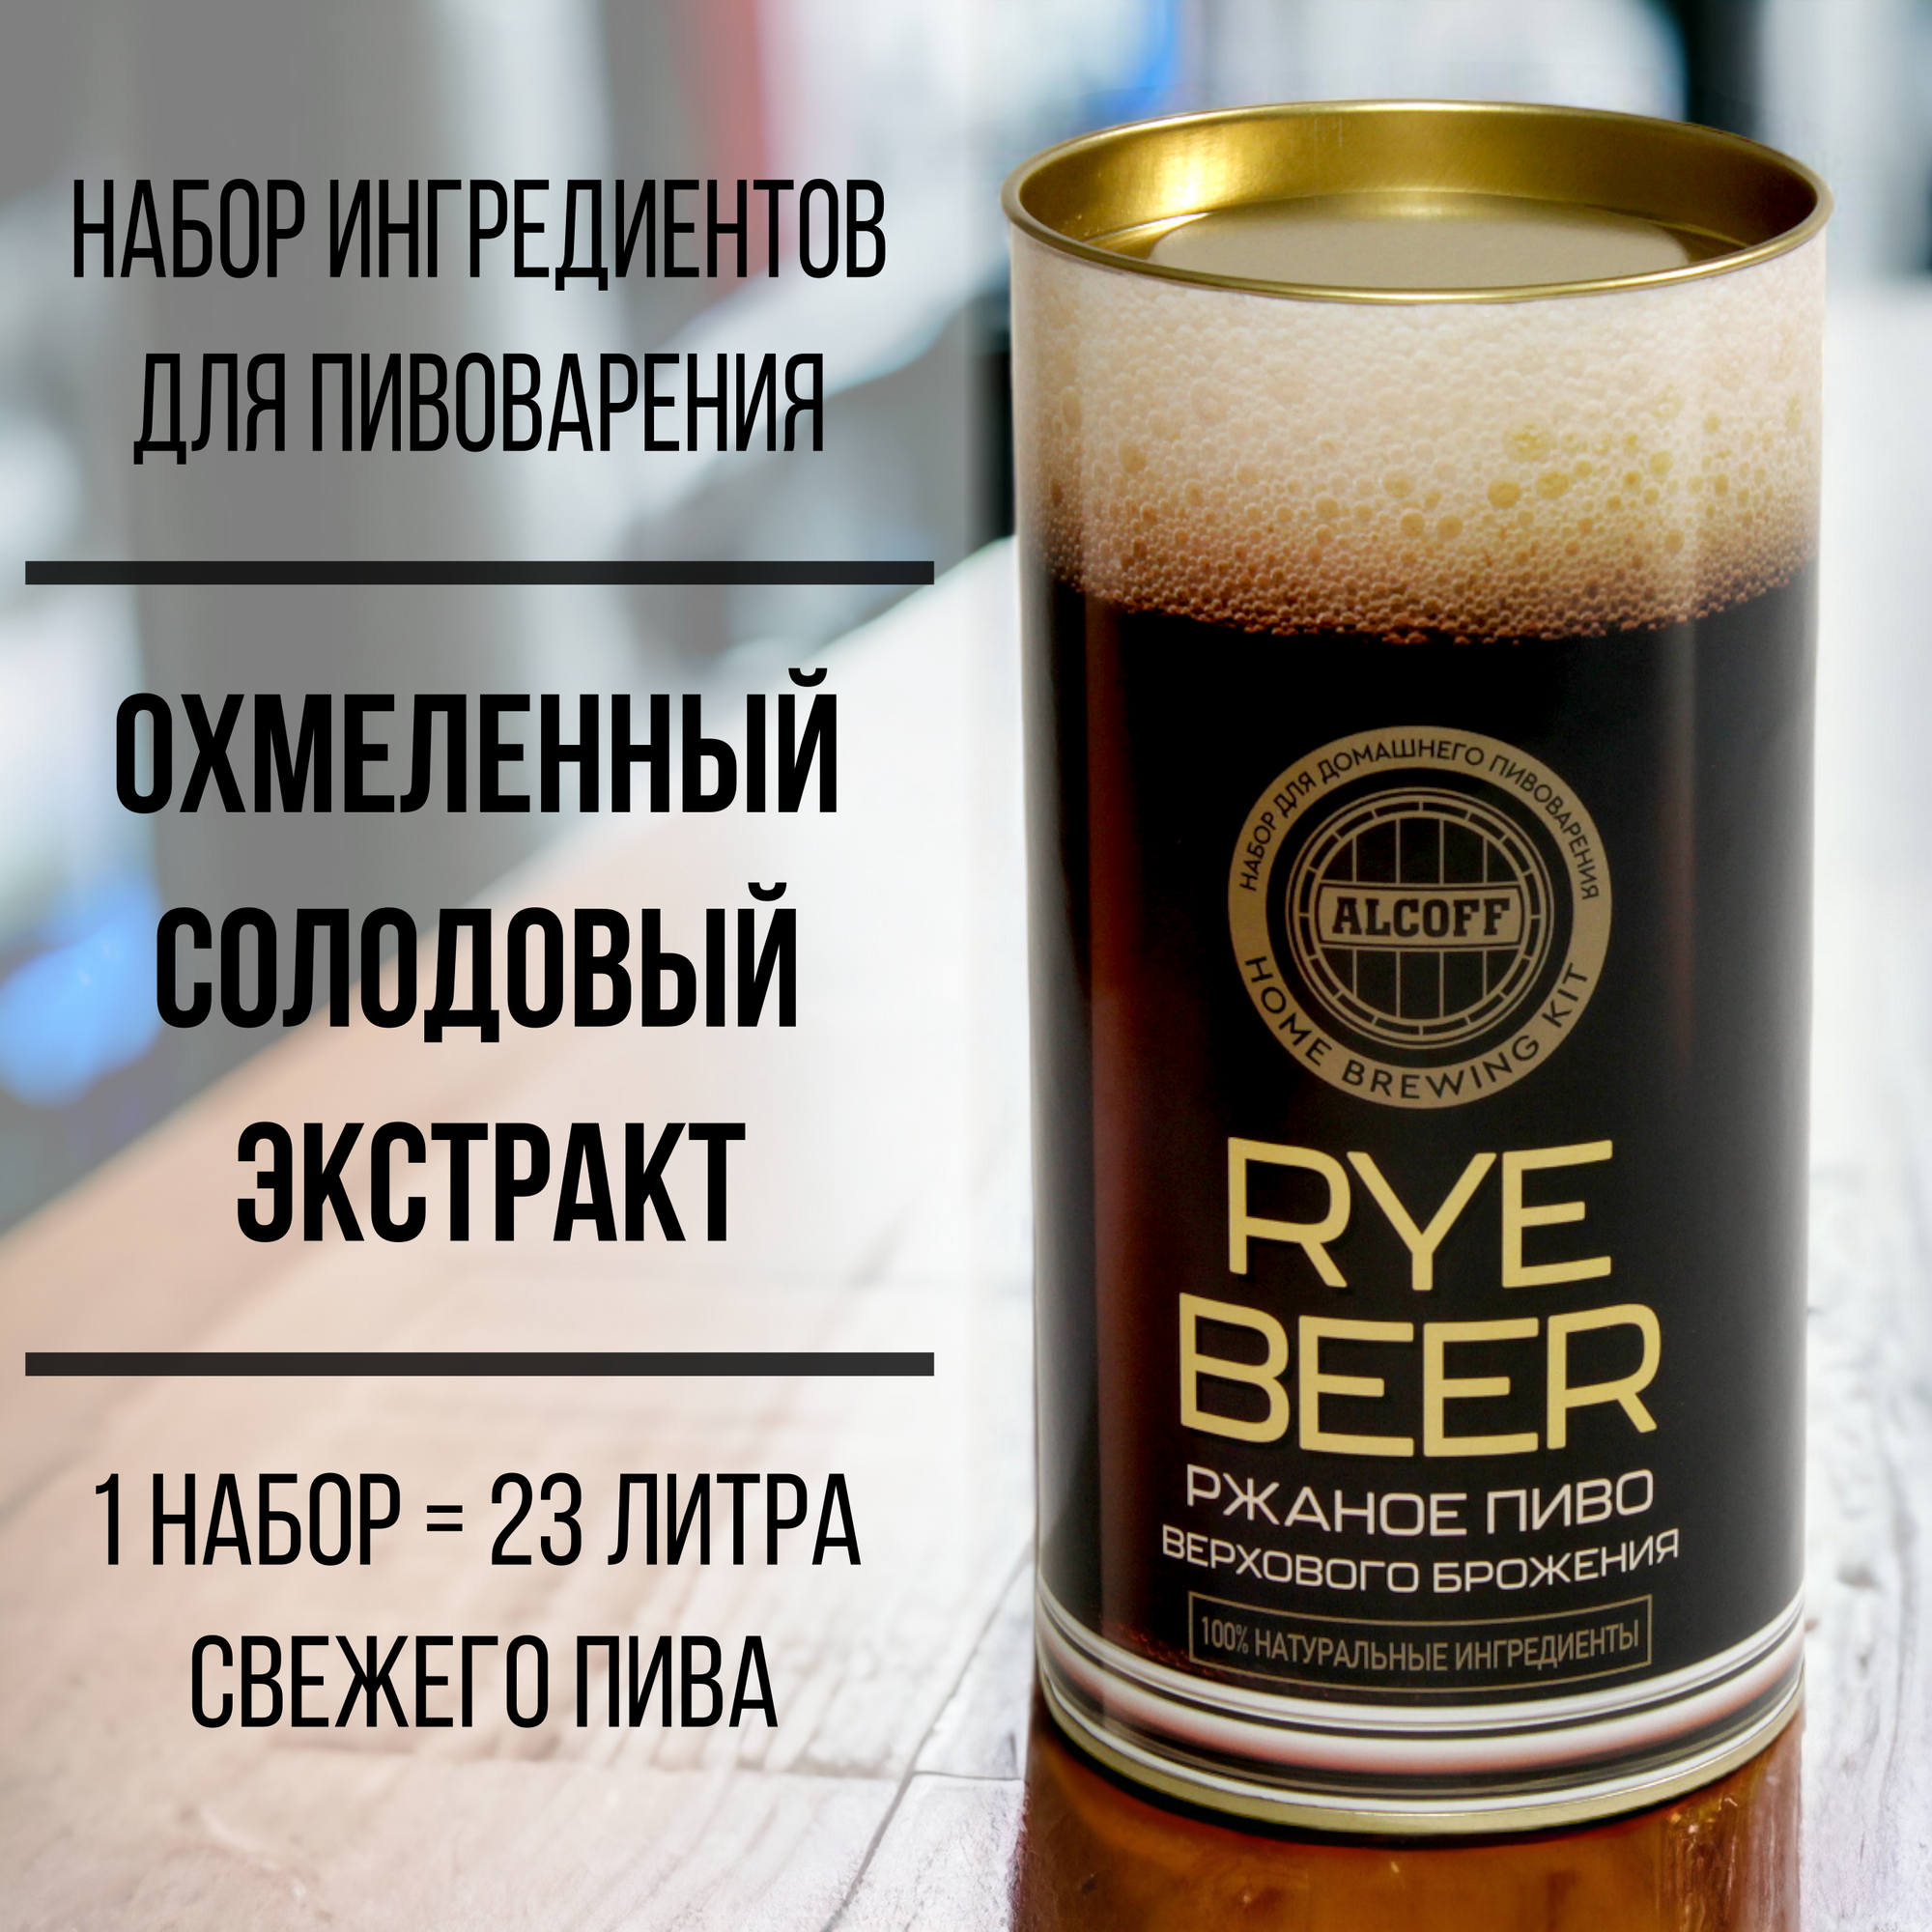 Охмелённый солодовый экстракт Alcoff "Rye beer" ржаное, 1.7 кг